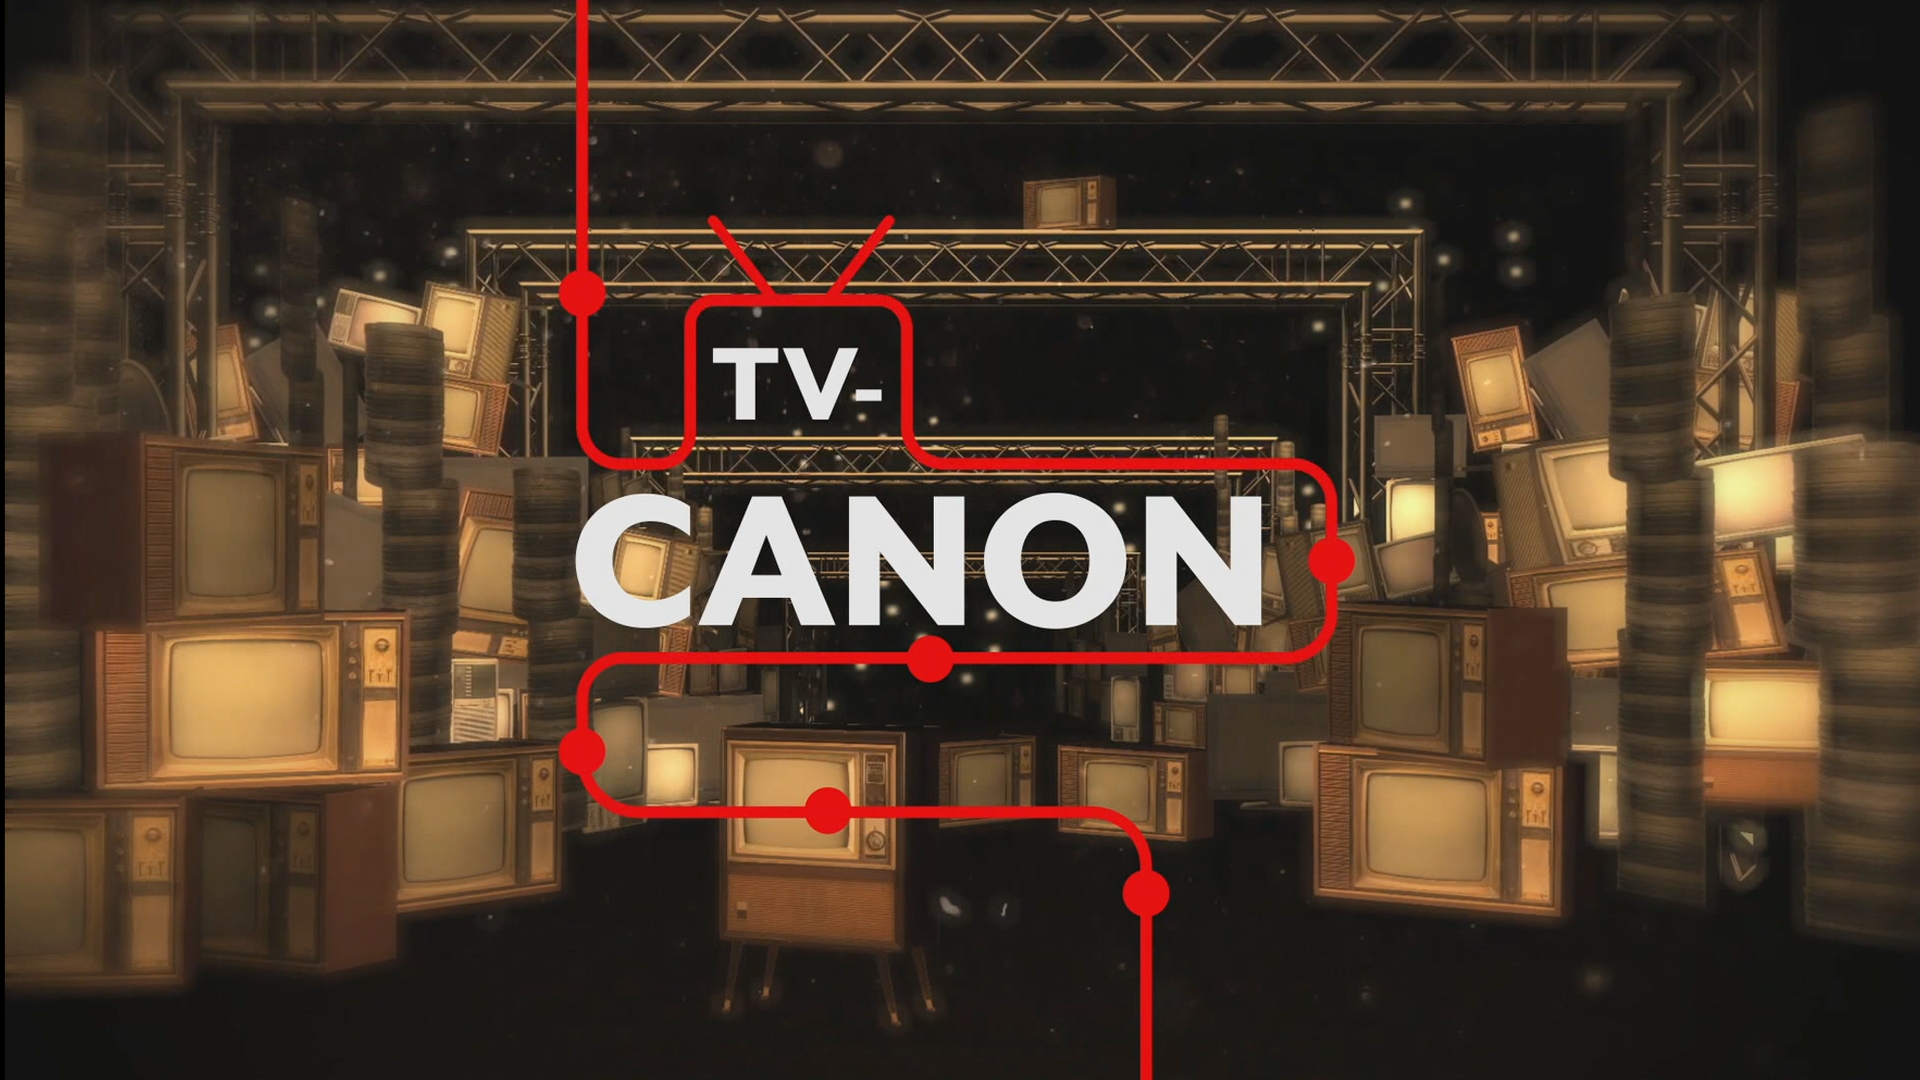 TV CANON